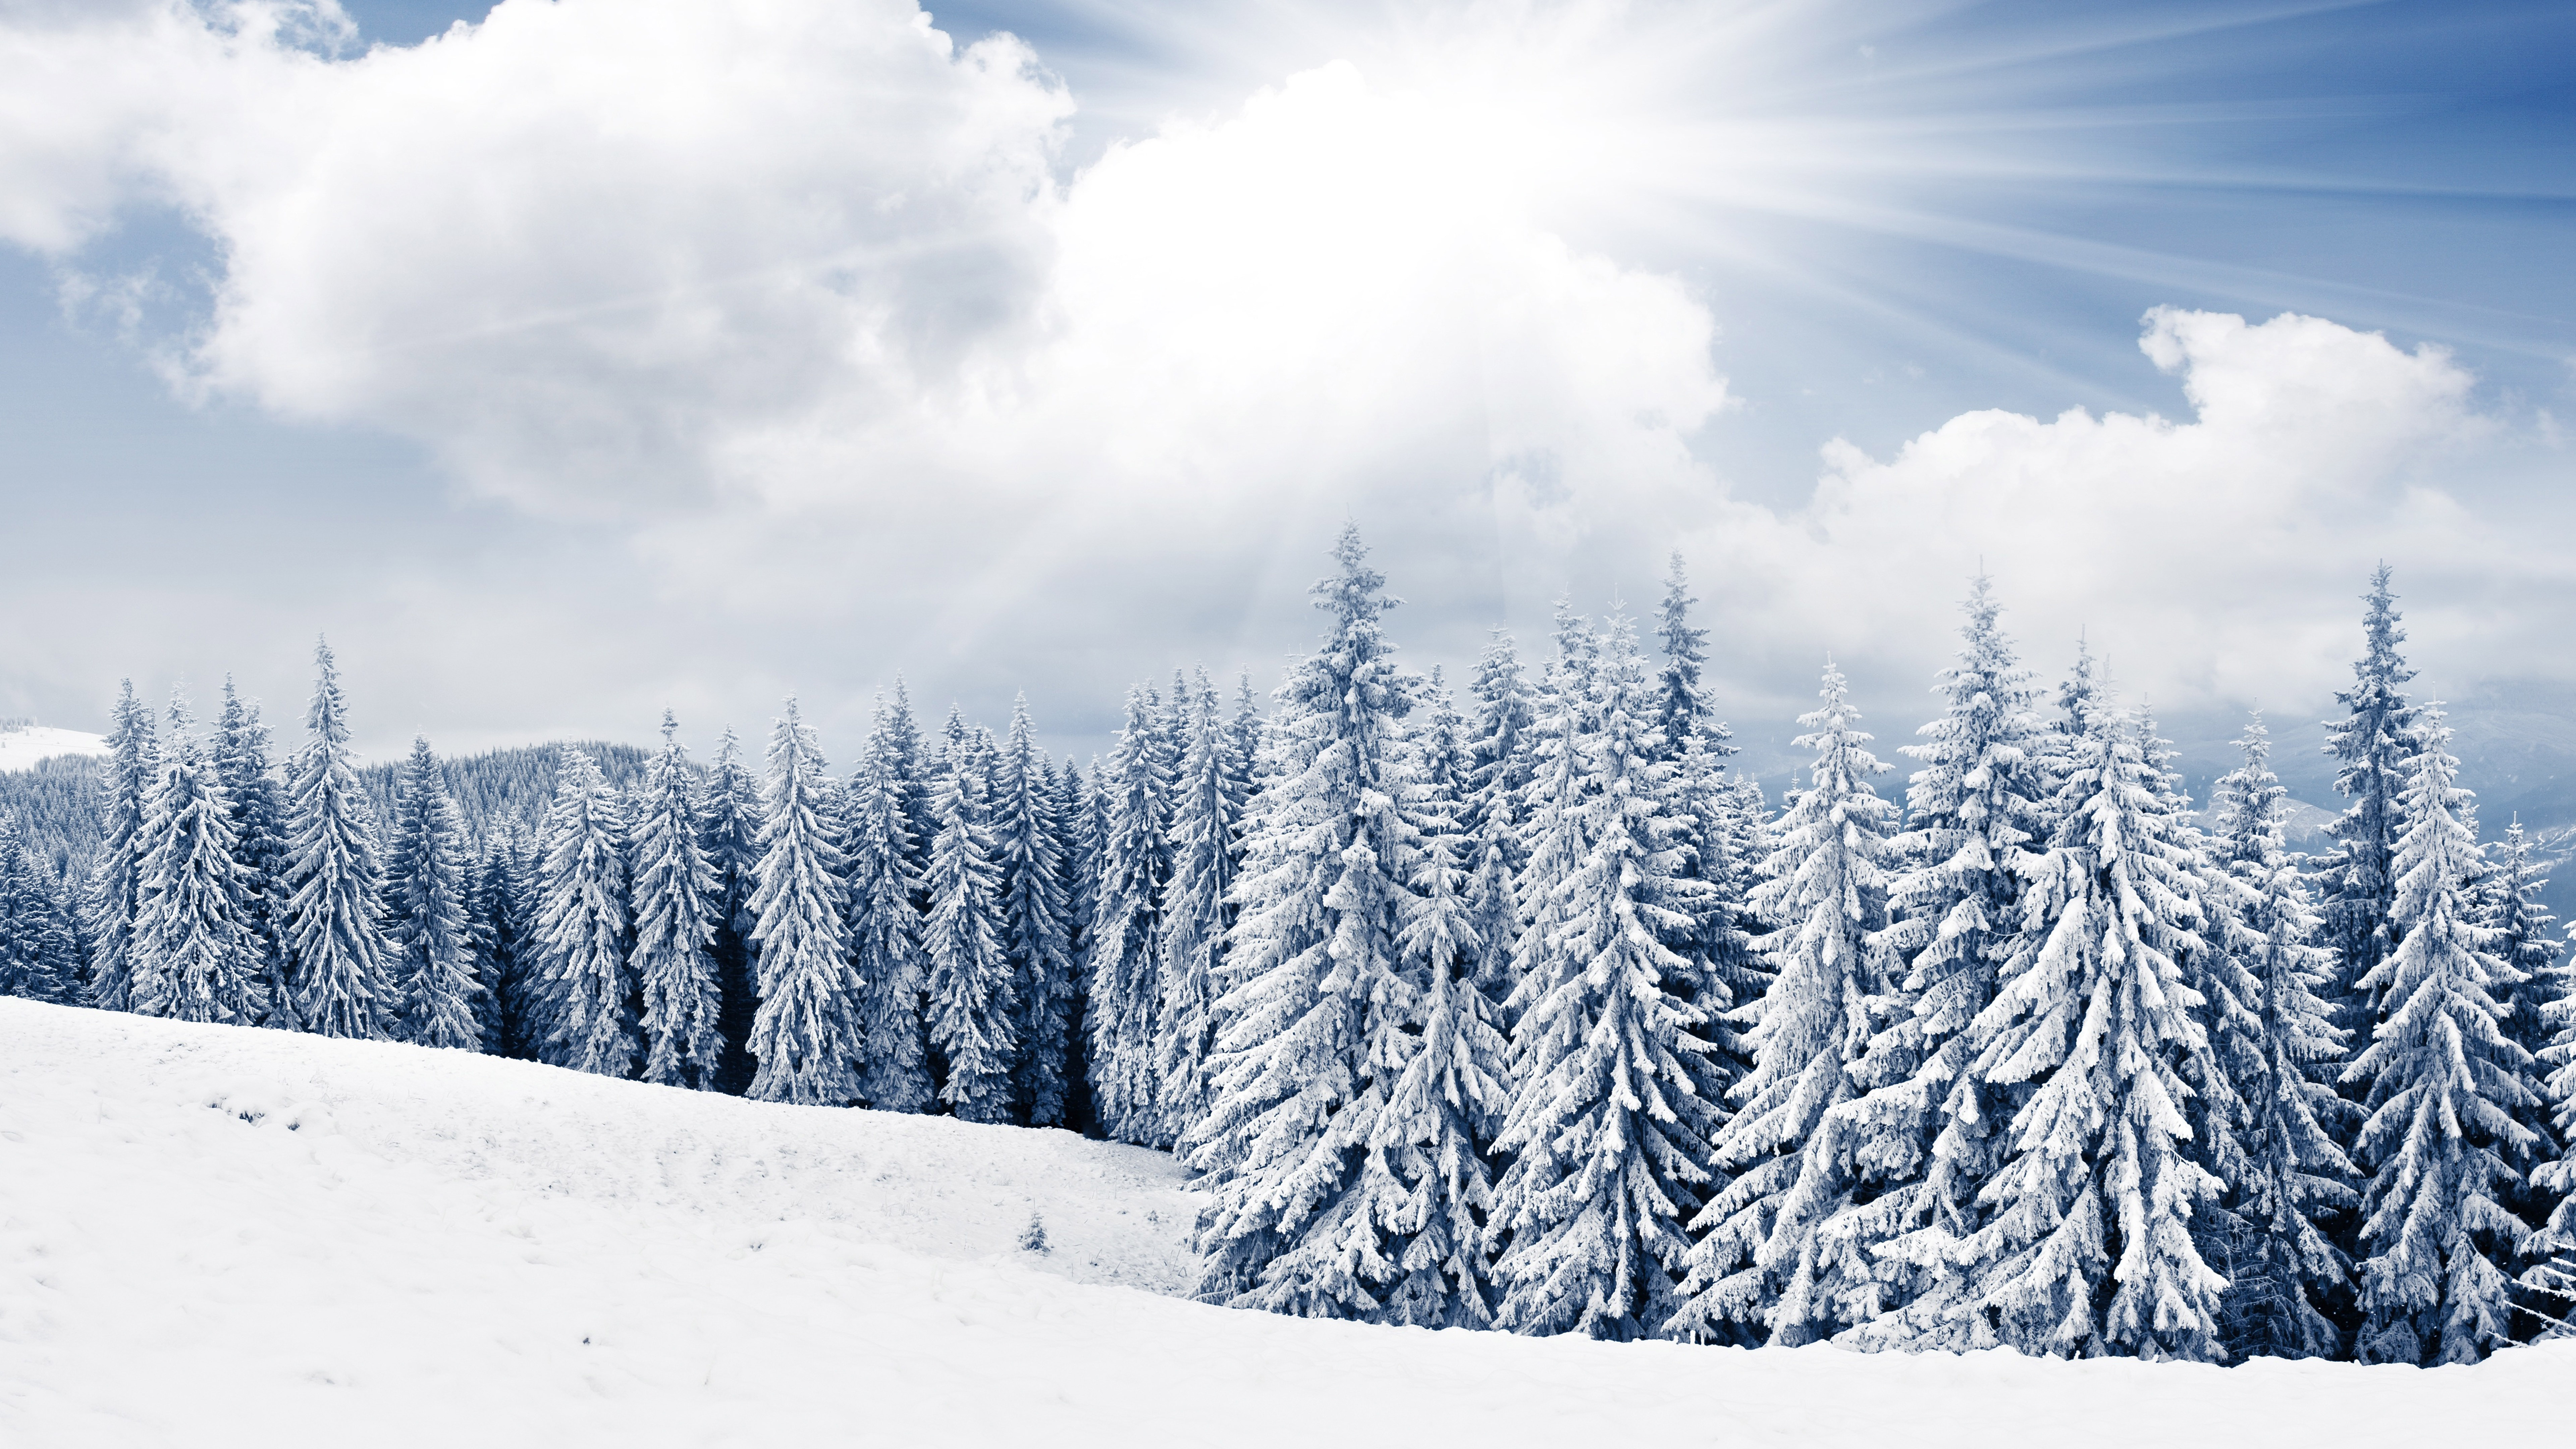 fond d'écran d'arbre de neige,neige,hiver,épinette noire à feuilles courtes,arbre,ciel